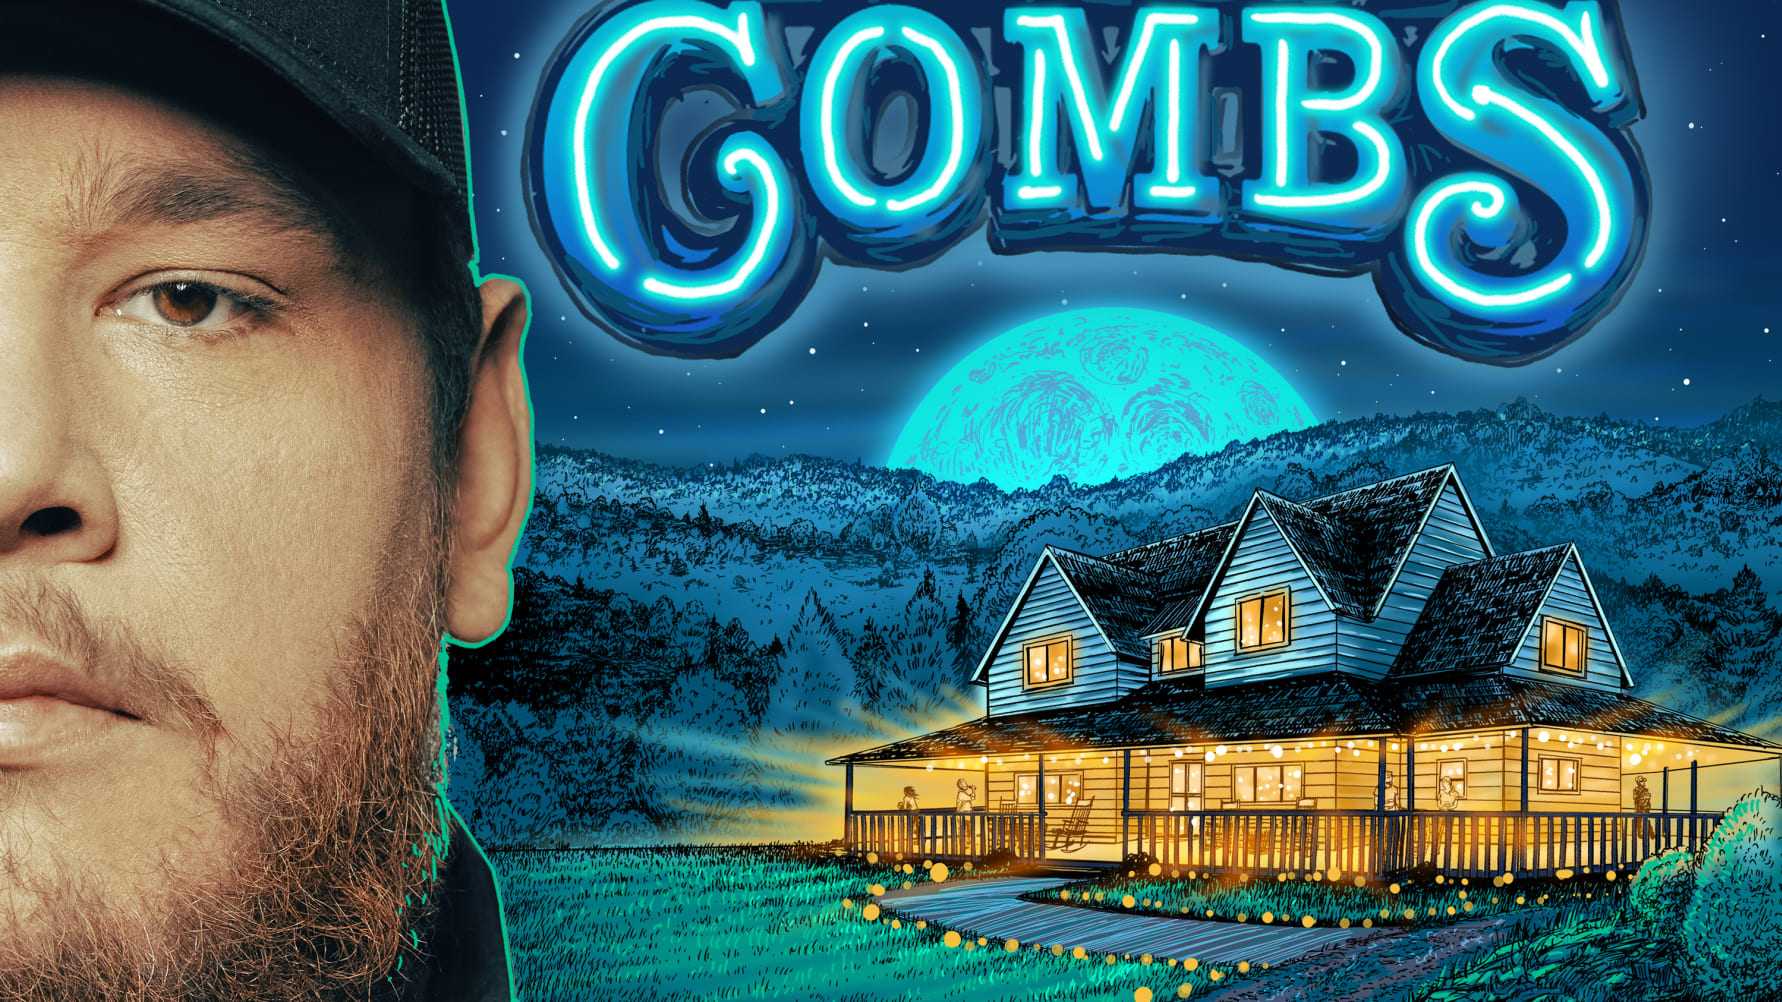 Amerikanska countrystjärnan Luke Combs släpper nya albumet ”Gettin’ Old” nu på fredag 24 mars